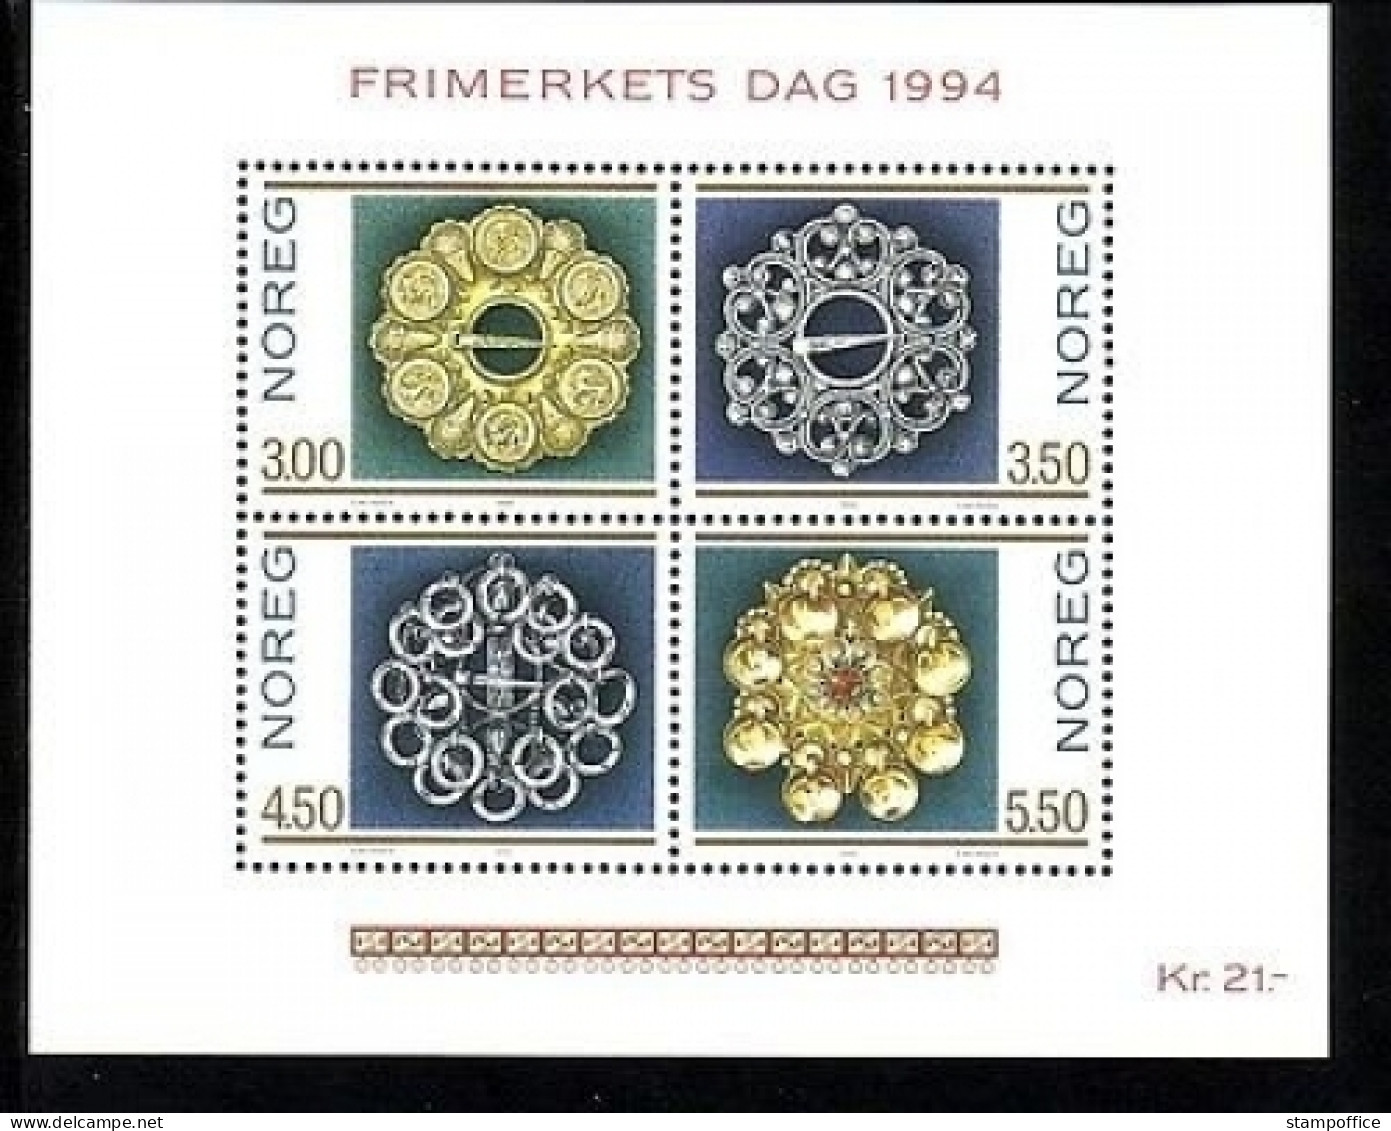 NORWEGEN BLOCK 21 POSTFRISCH(MINT) TAG DER BRIEFMARKE 1994 - TRACHTENSILBER - Blocks & Kleinbögen